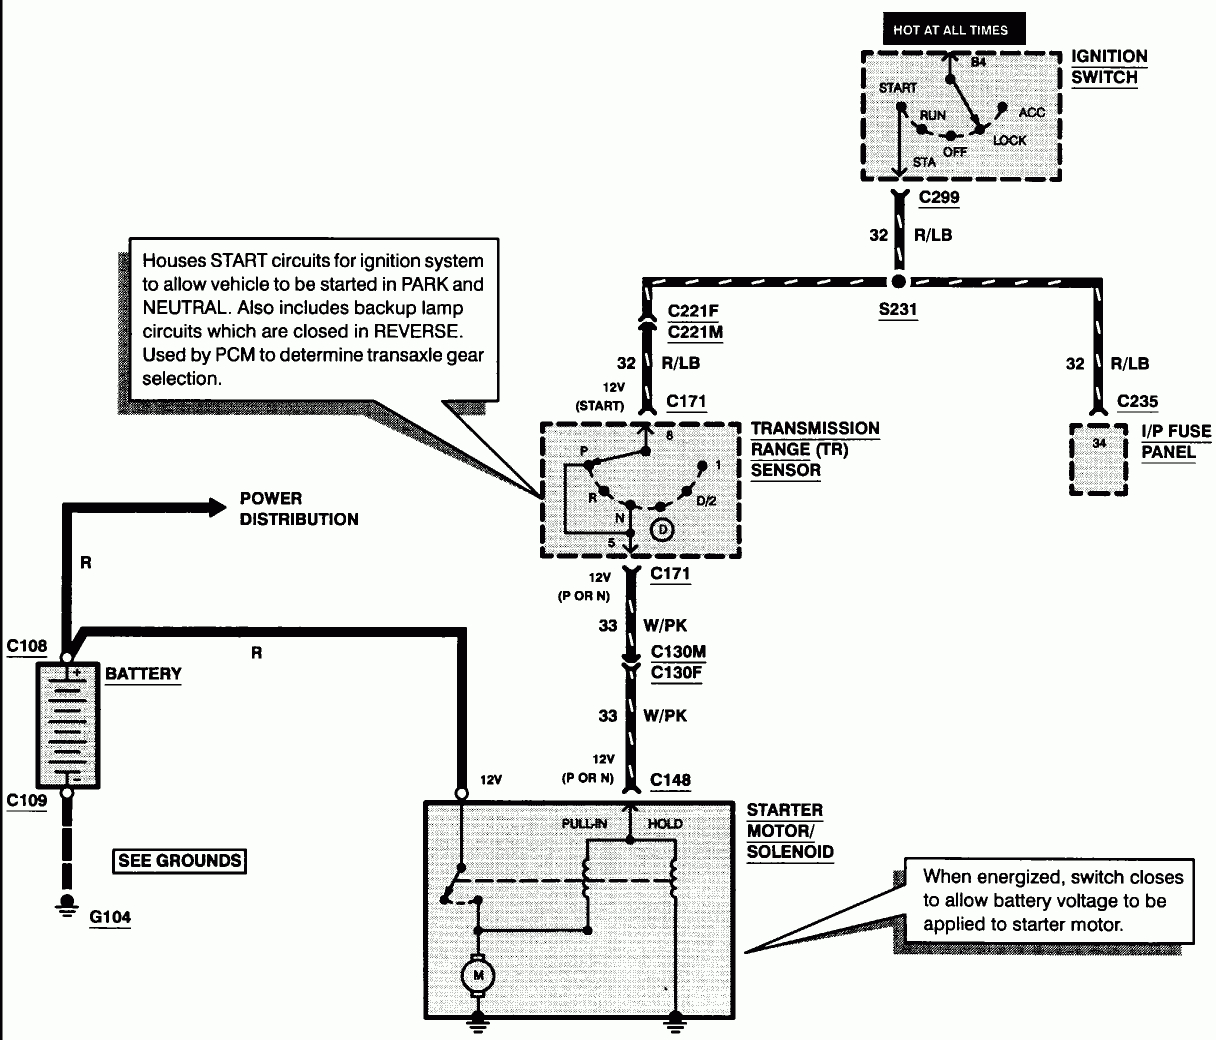 2001 Taurus Ignition Wiring - Wiring Diagrams Hubs - Ford Ignition Switch Wiring Diagram